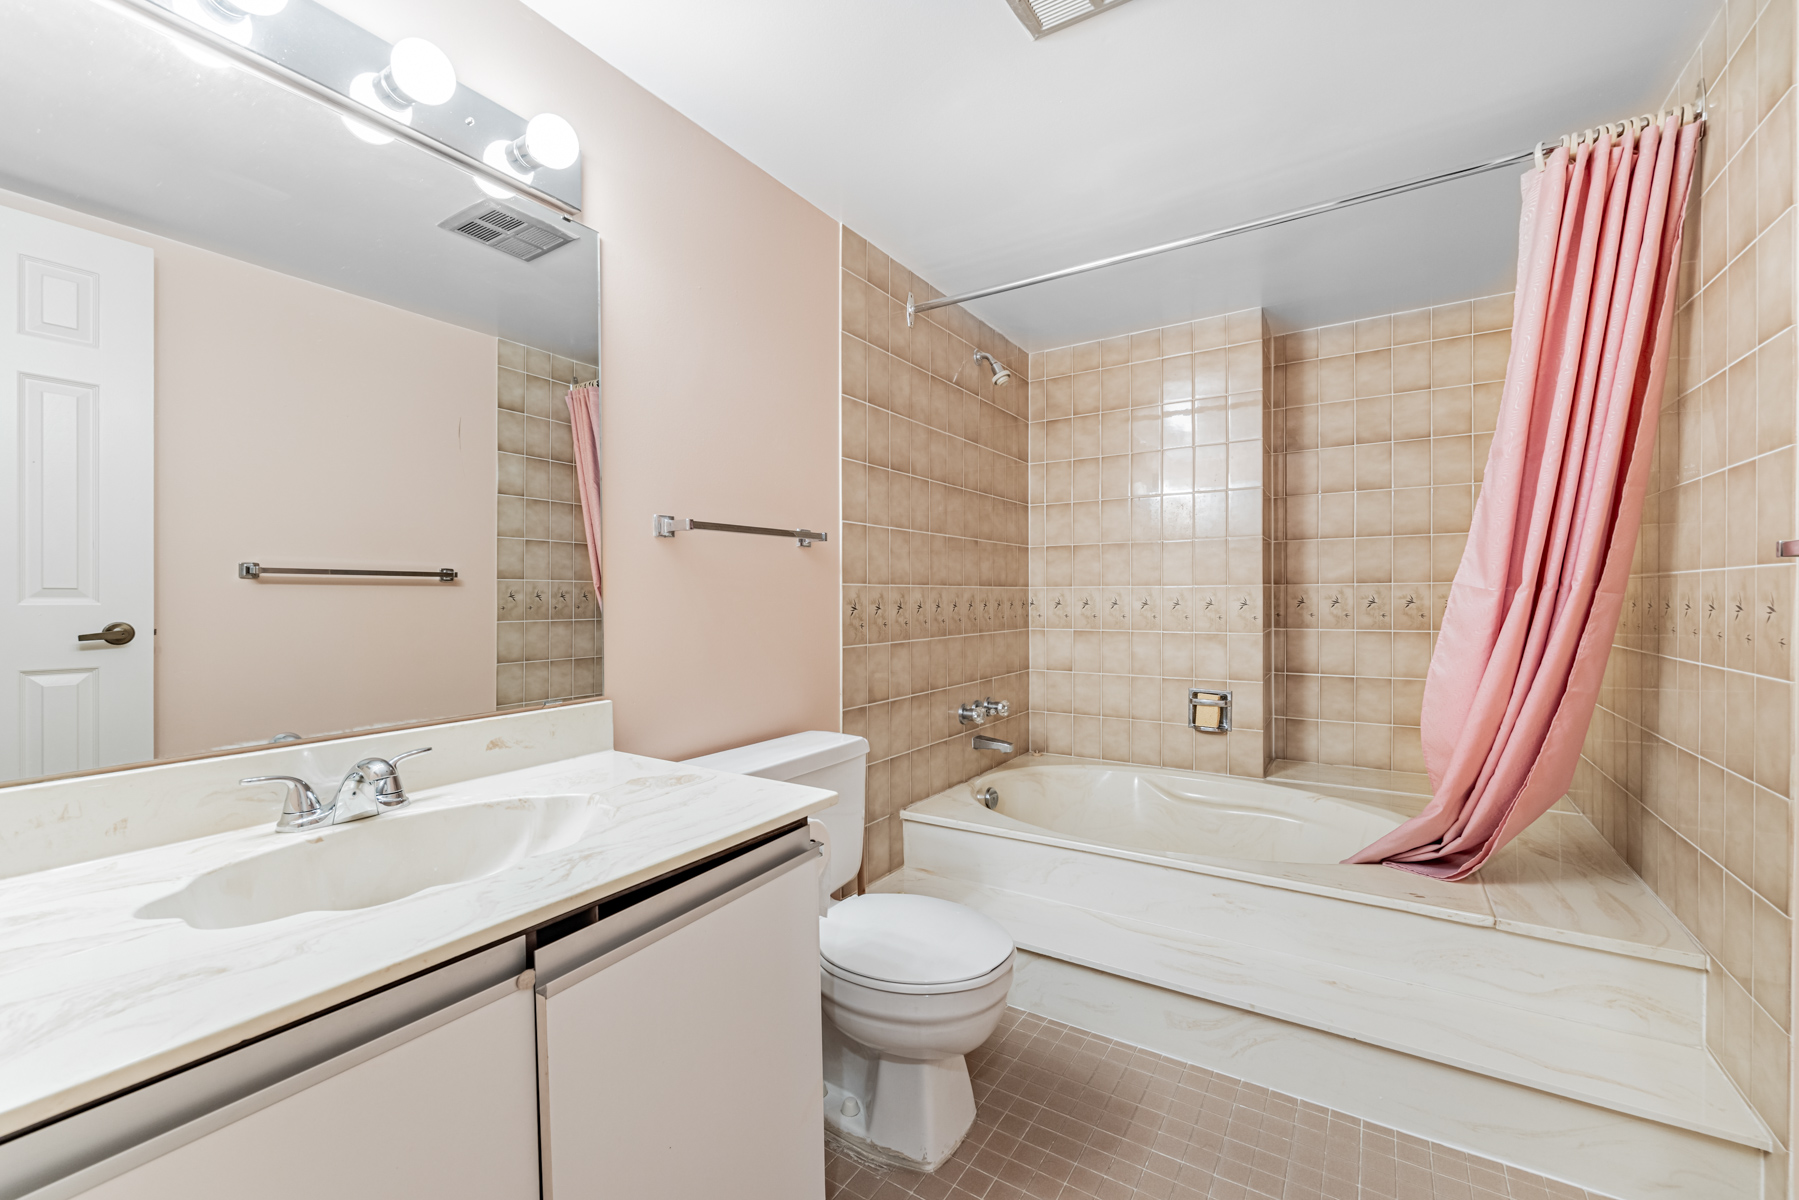 Large 4-piece ensuite bathroom with sunken bath – 45 Carlton St Unit 1405.